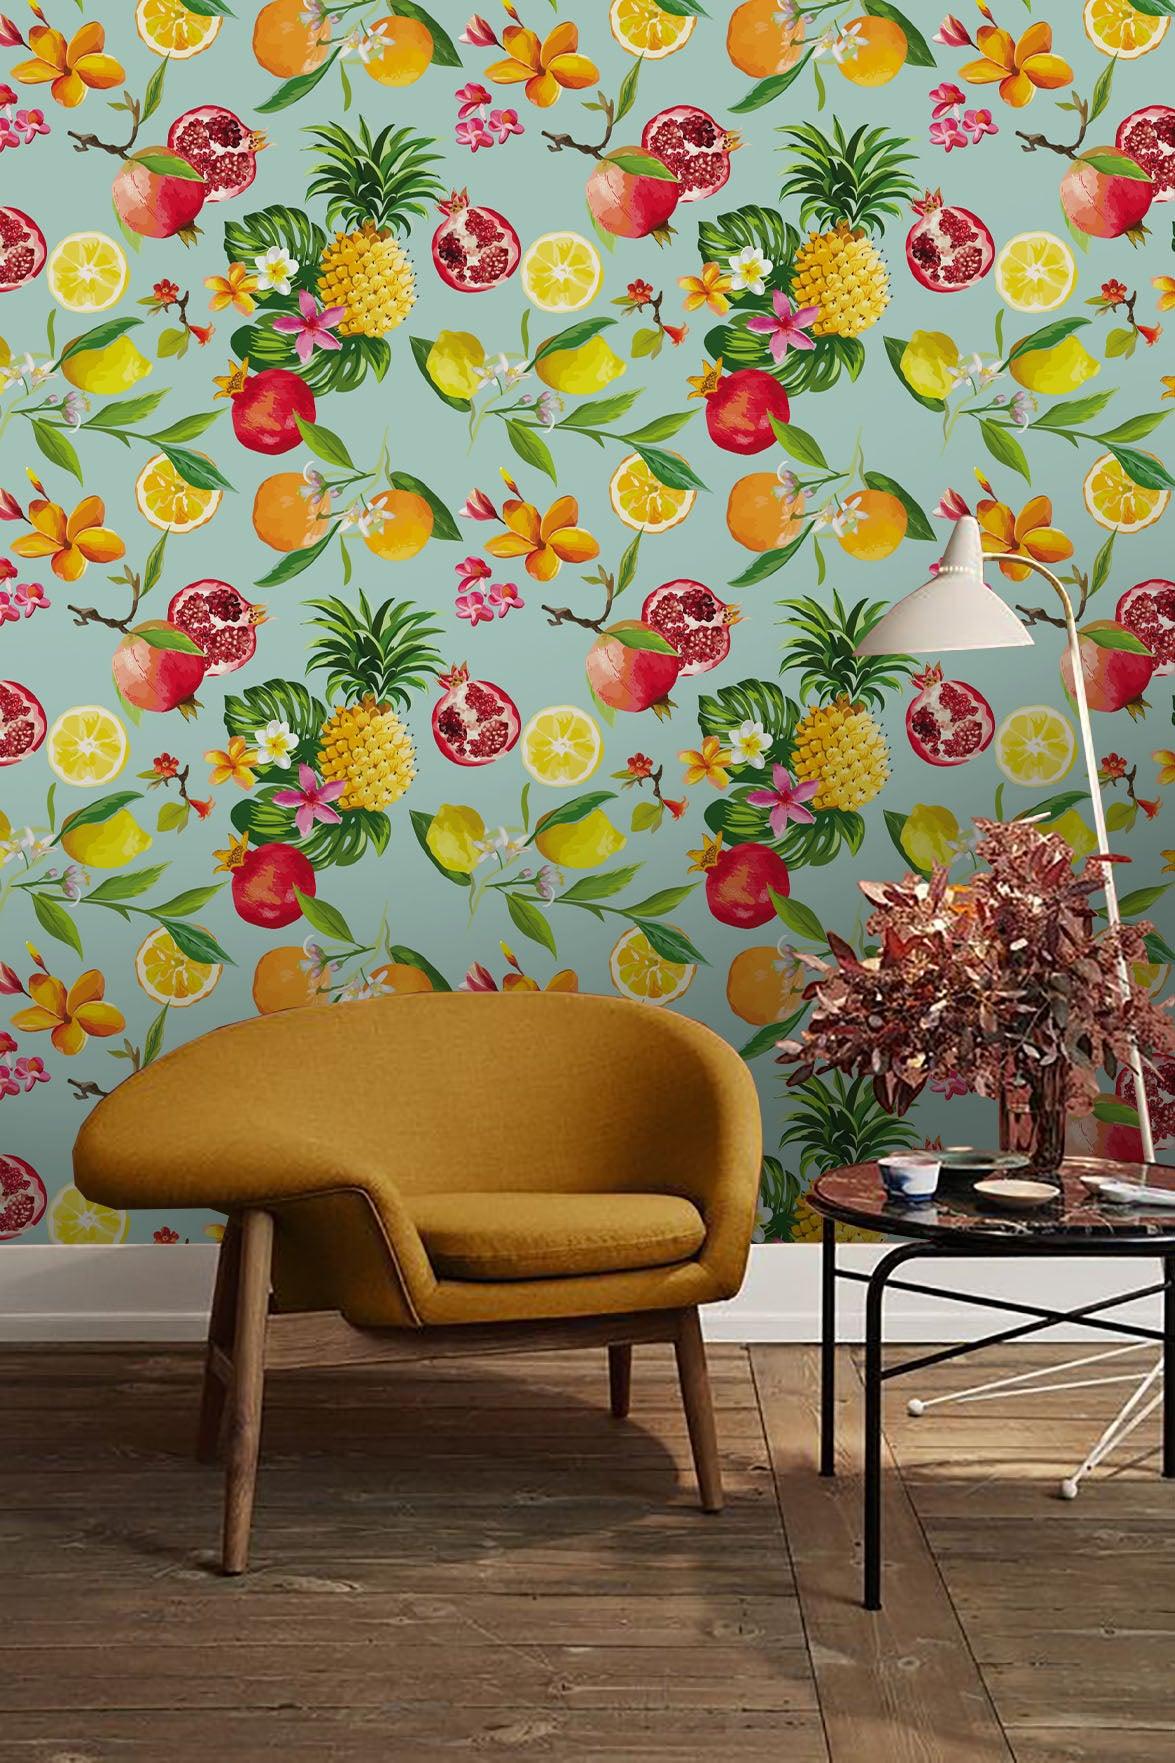 3D Fresh Fruit Wall Mural Wallpaper 155- Jess Art Decoration